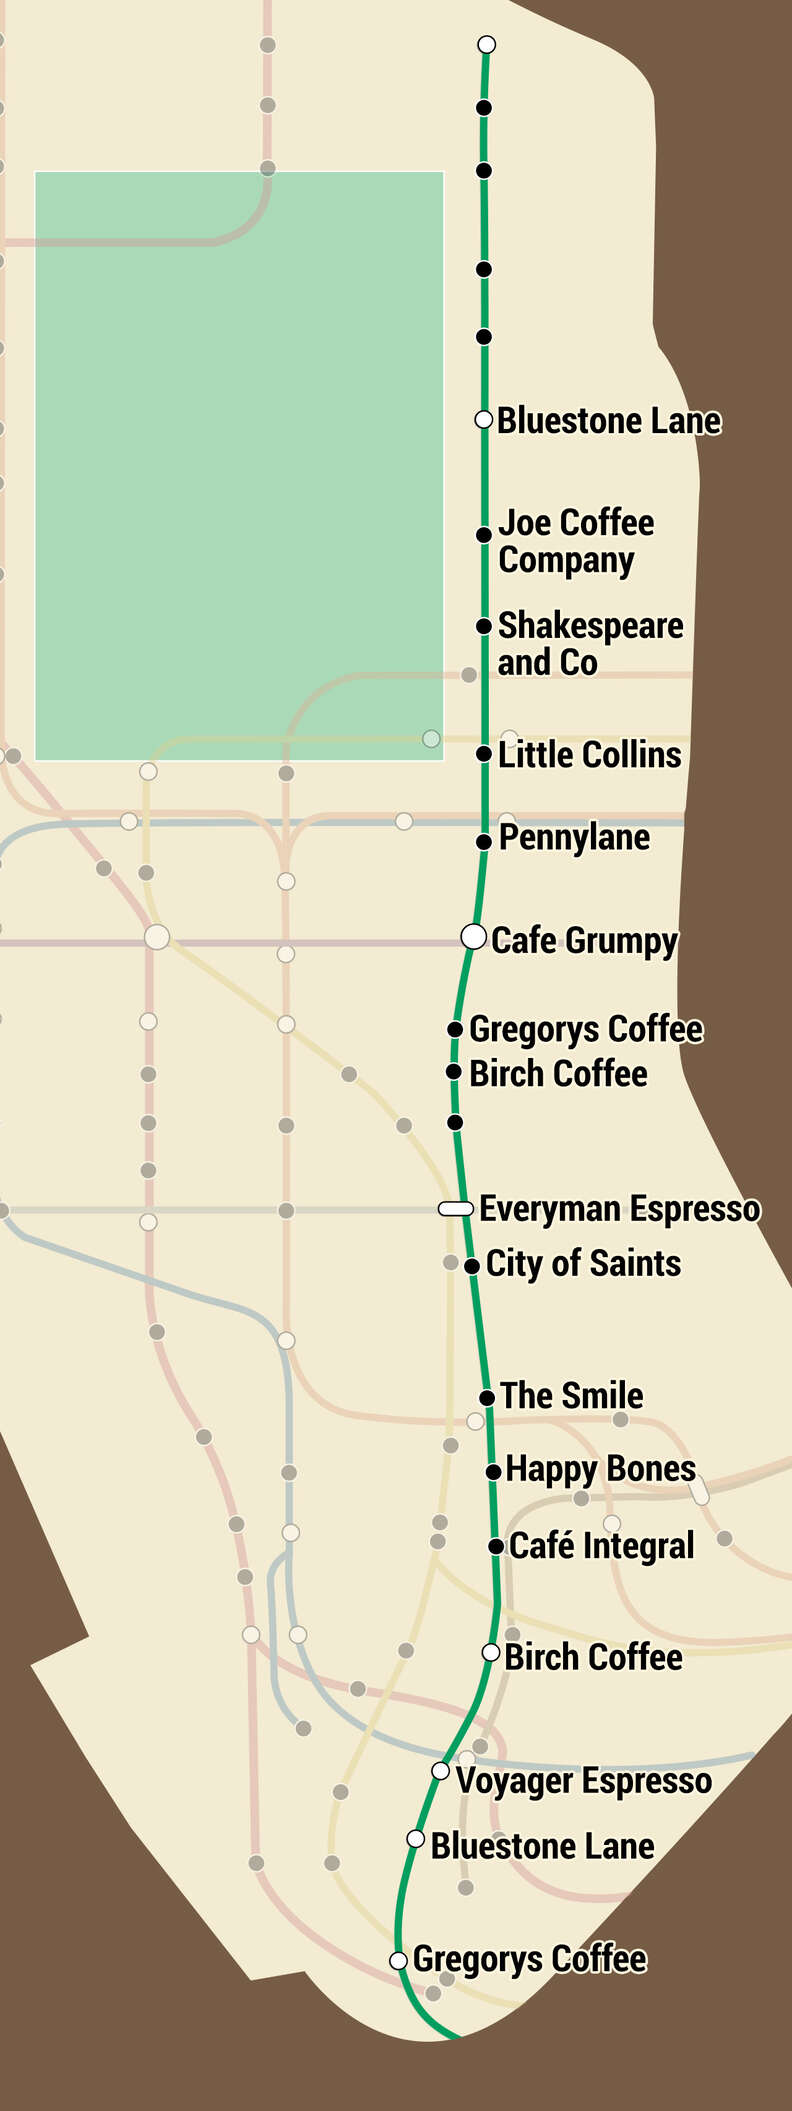 NYC coffee subway map